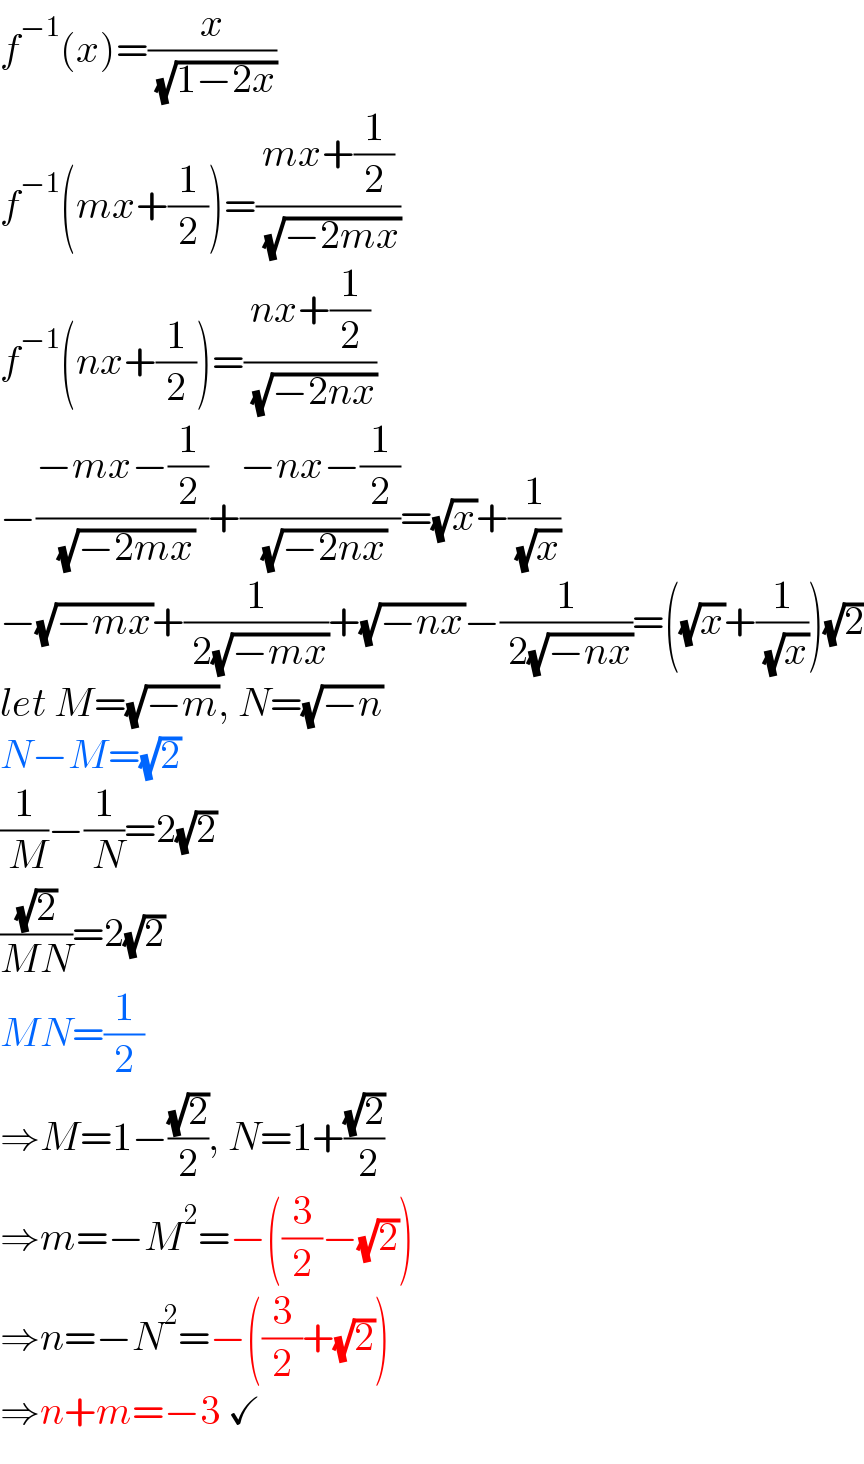 f^(−1) (x)=(x/( (√(1−2x))))  f^(−1) (mx+(1/2))=((mx+(1/2))/( (√(−2mx))))  f^(−1) (nx+(1/2))=((nx+(1/2))/( (√(−2nx))))  −((−mx−(1/2))/( (√(−2mx))))+((−nx−(1/2))/( (√(−2nx))))=(√x)+(1/( (√x)))  −(√(−mx))+(1/( 2(√(−mx))))+(√(−nx))−(1/( 2(√(−nx))))=((√x)+(1/( (√x))))(√2)  let M=(√(−m)), N=(√(−n))  N−M=(√2)  (1/( M))−(1/( N))=2(√2)  ((√2)/(MN))=2(√2)  MN=(1/2)  ⇒M=1−((√2)/2), N=1+((√2)/( 2))  ⇒m=−M^2 =−((3/2)−(√2))  ⇒n=−N^2 =−((3/2)+(√2))  ⇒n+m=−3 ✓  